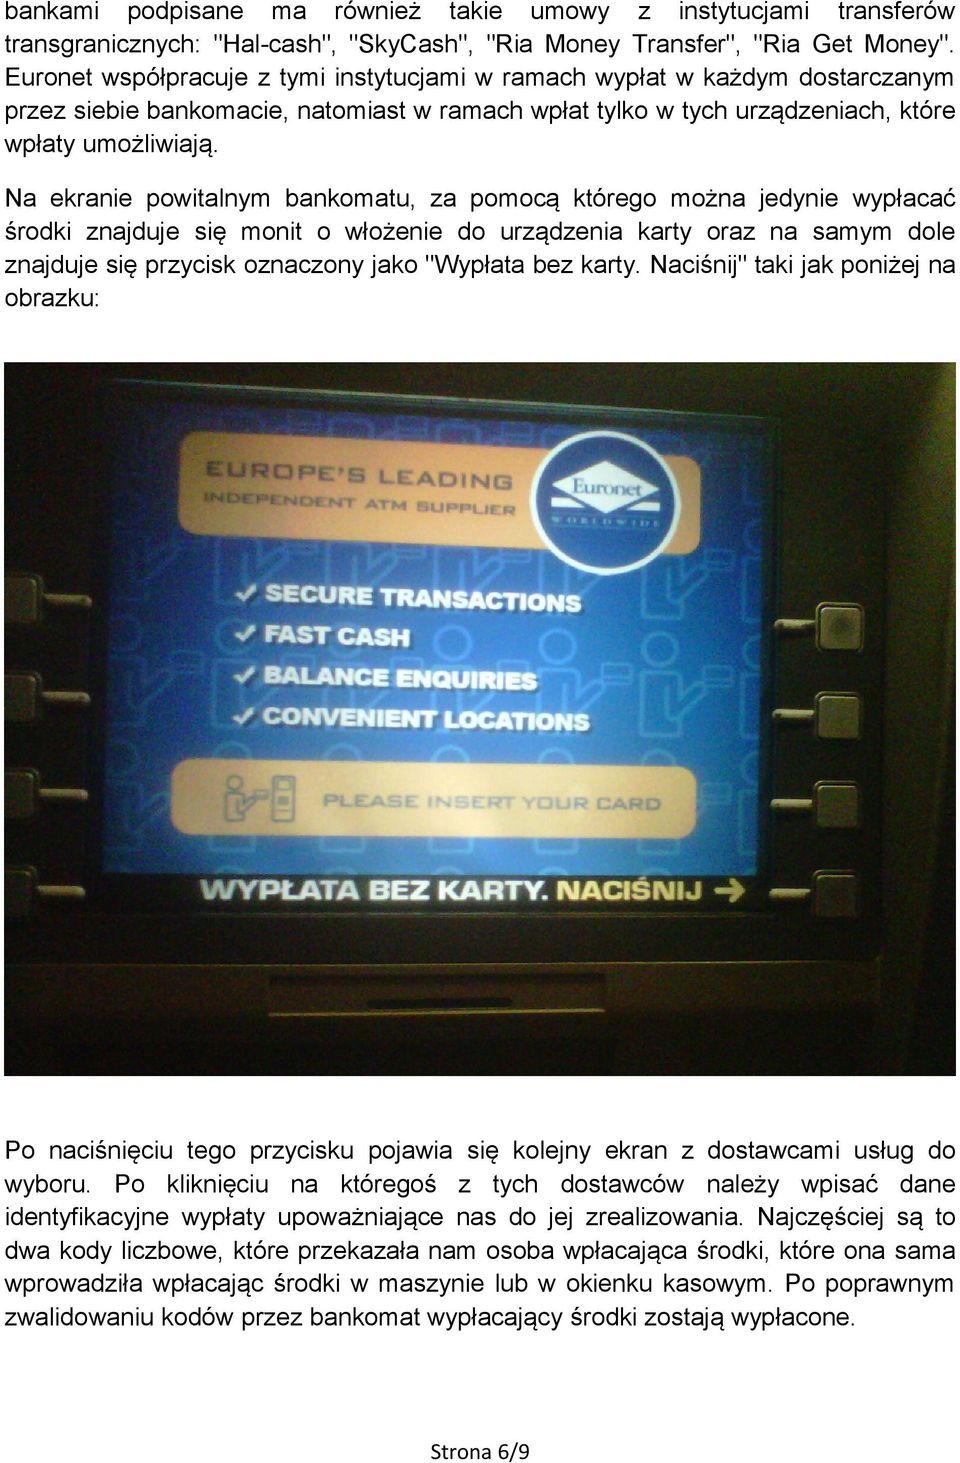 Na ekranie powitalnym bankomatu, za pomocą którego można jedynie wypłacać środki znajduje się monit o włożenie do urządzenia karty oraz na samym dole znajduje się przycisk oznaczony jako "Wypłata bez